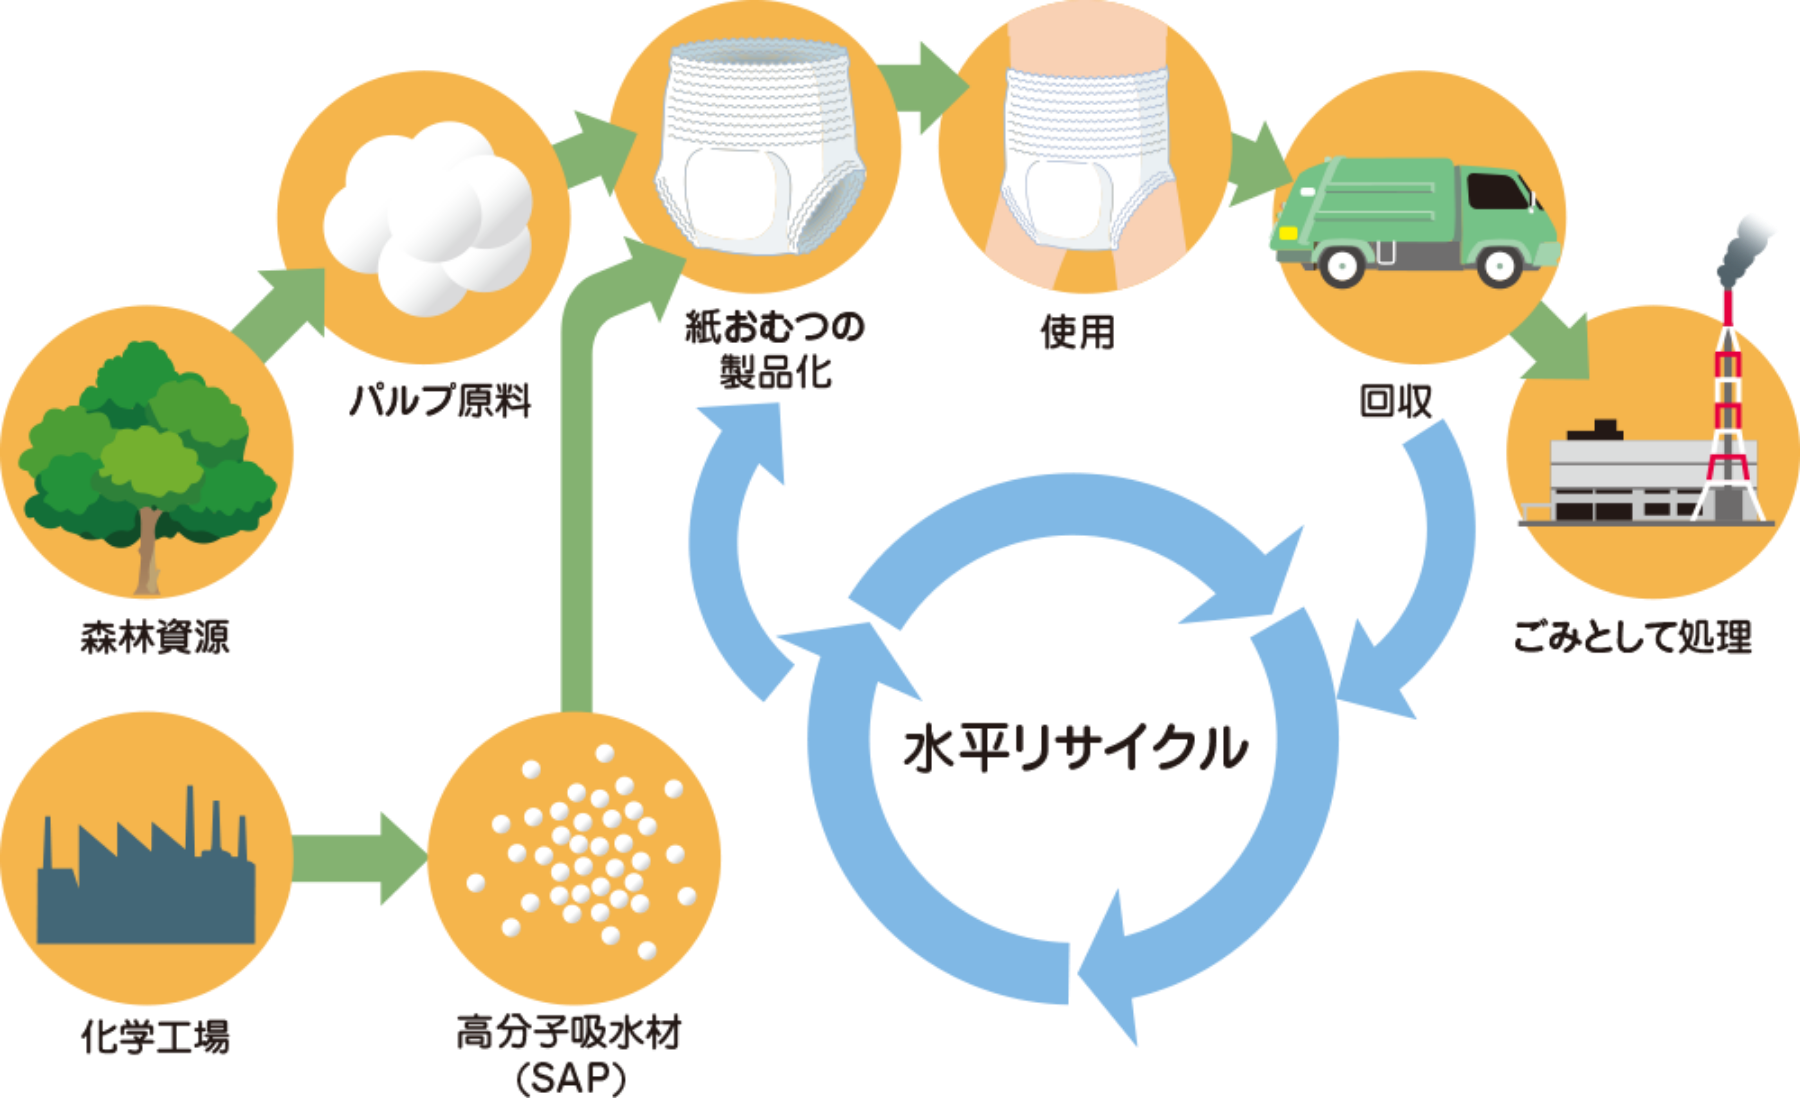 森林資源から作られたパルプ原料、化学工場で作られた高分子吸水材（SAP)からできた紙おむつを使用後に回収し、再び紙おむつとして利用する水平リサイクルの図